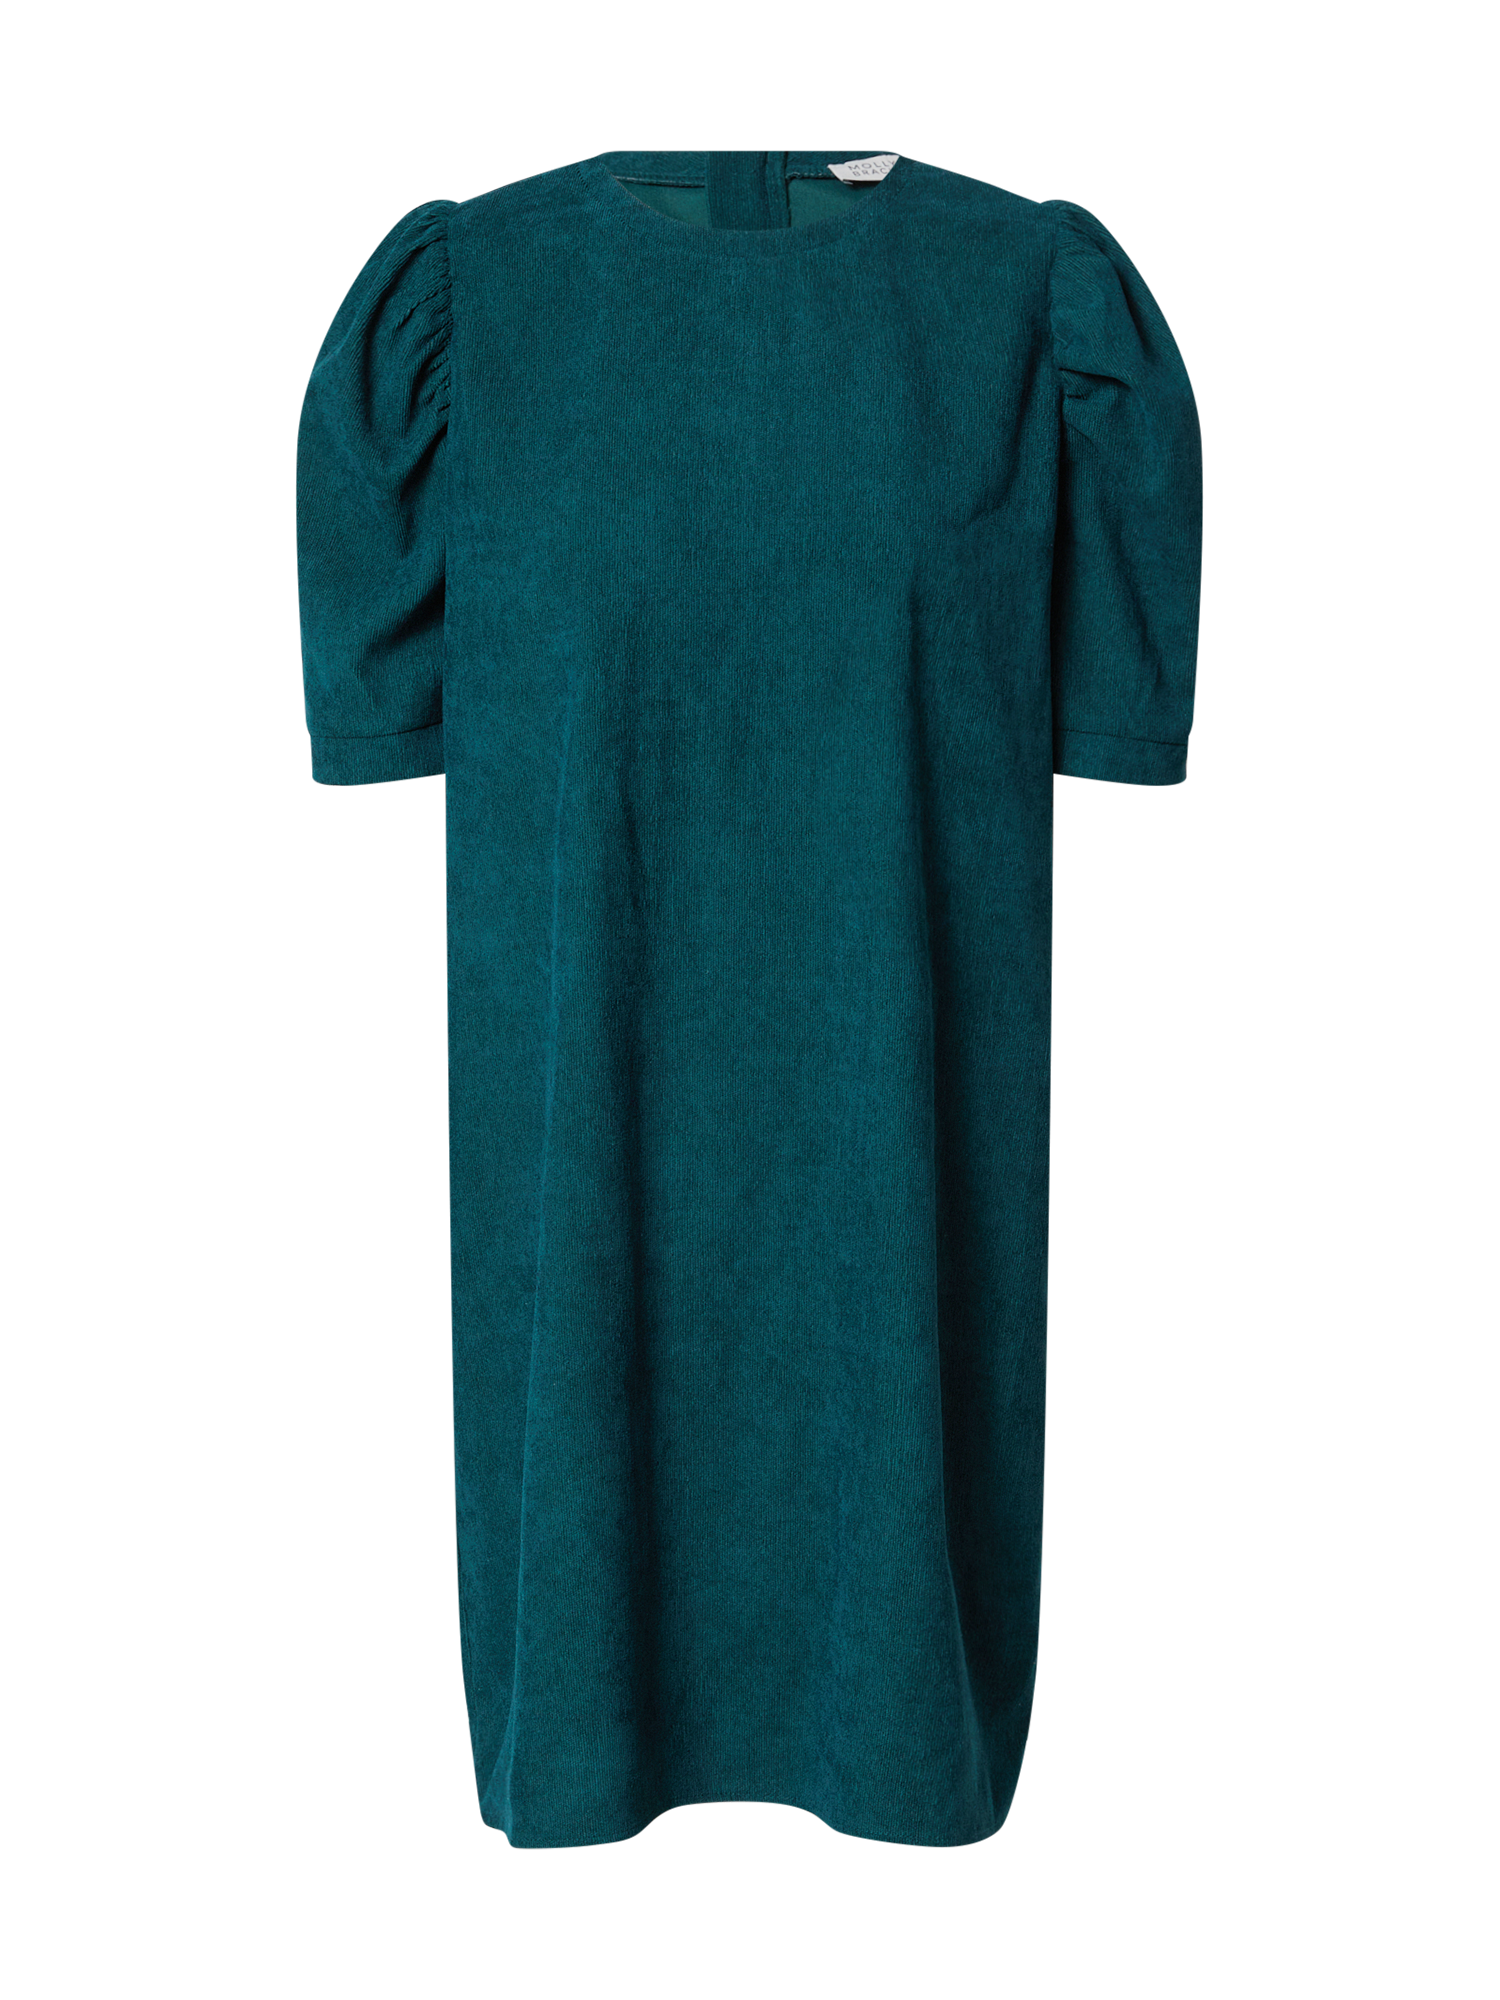 Kobiety Odzież Molly BRACKEN Sukienka w kolorze Zielonym 